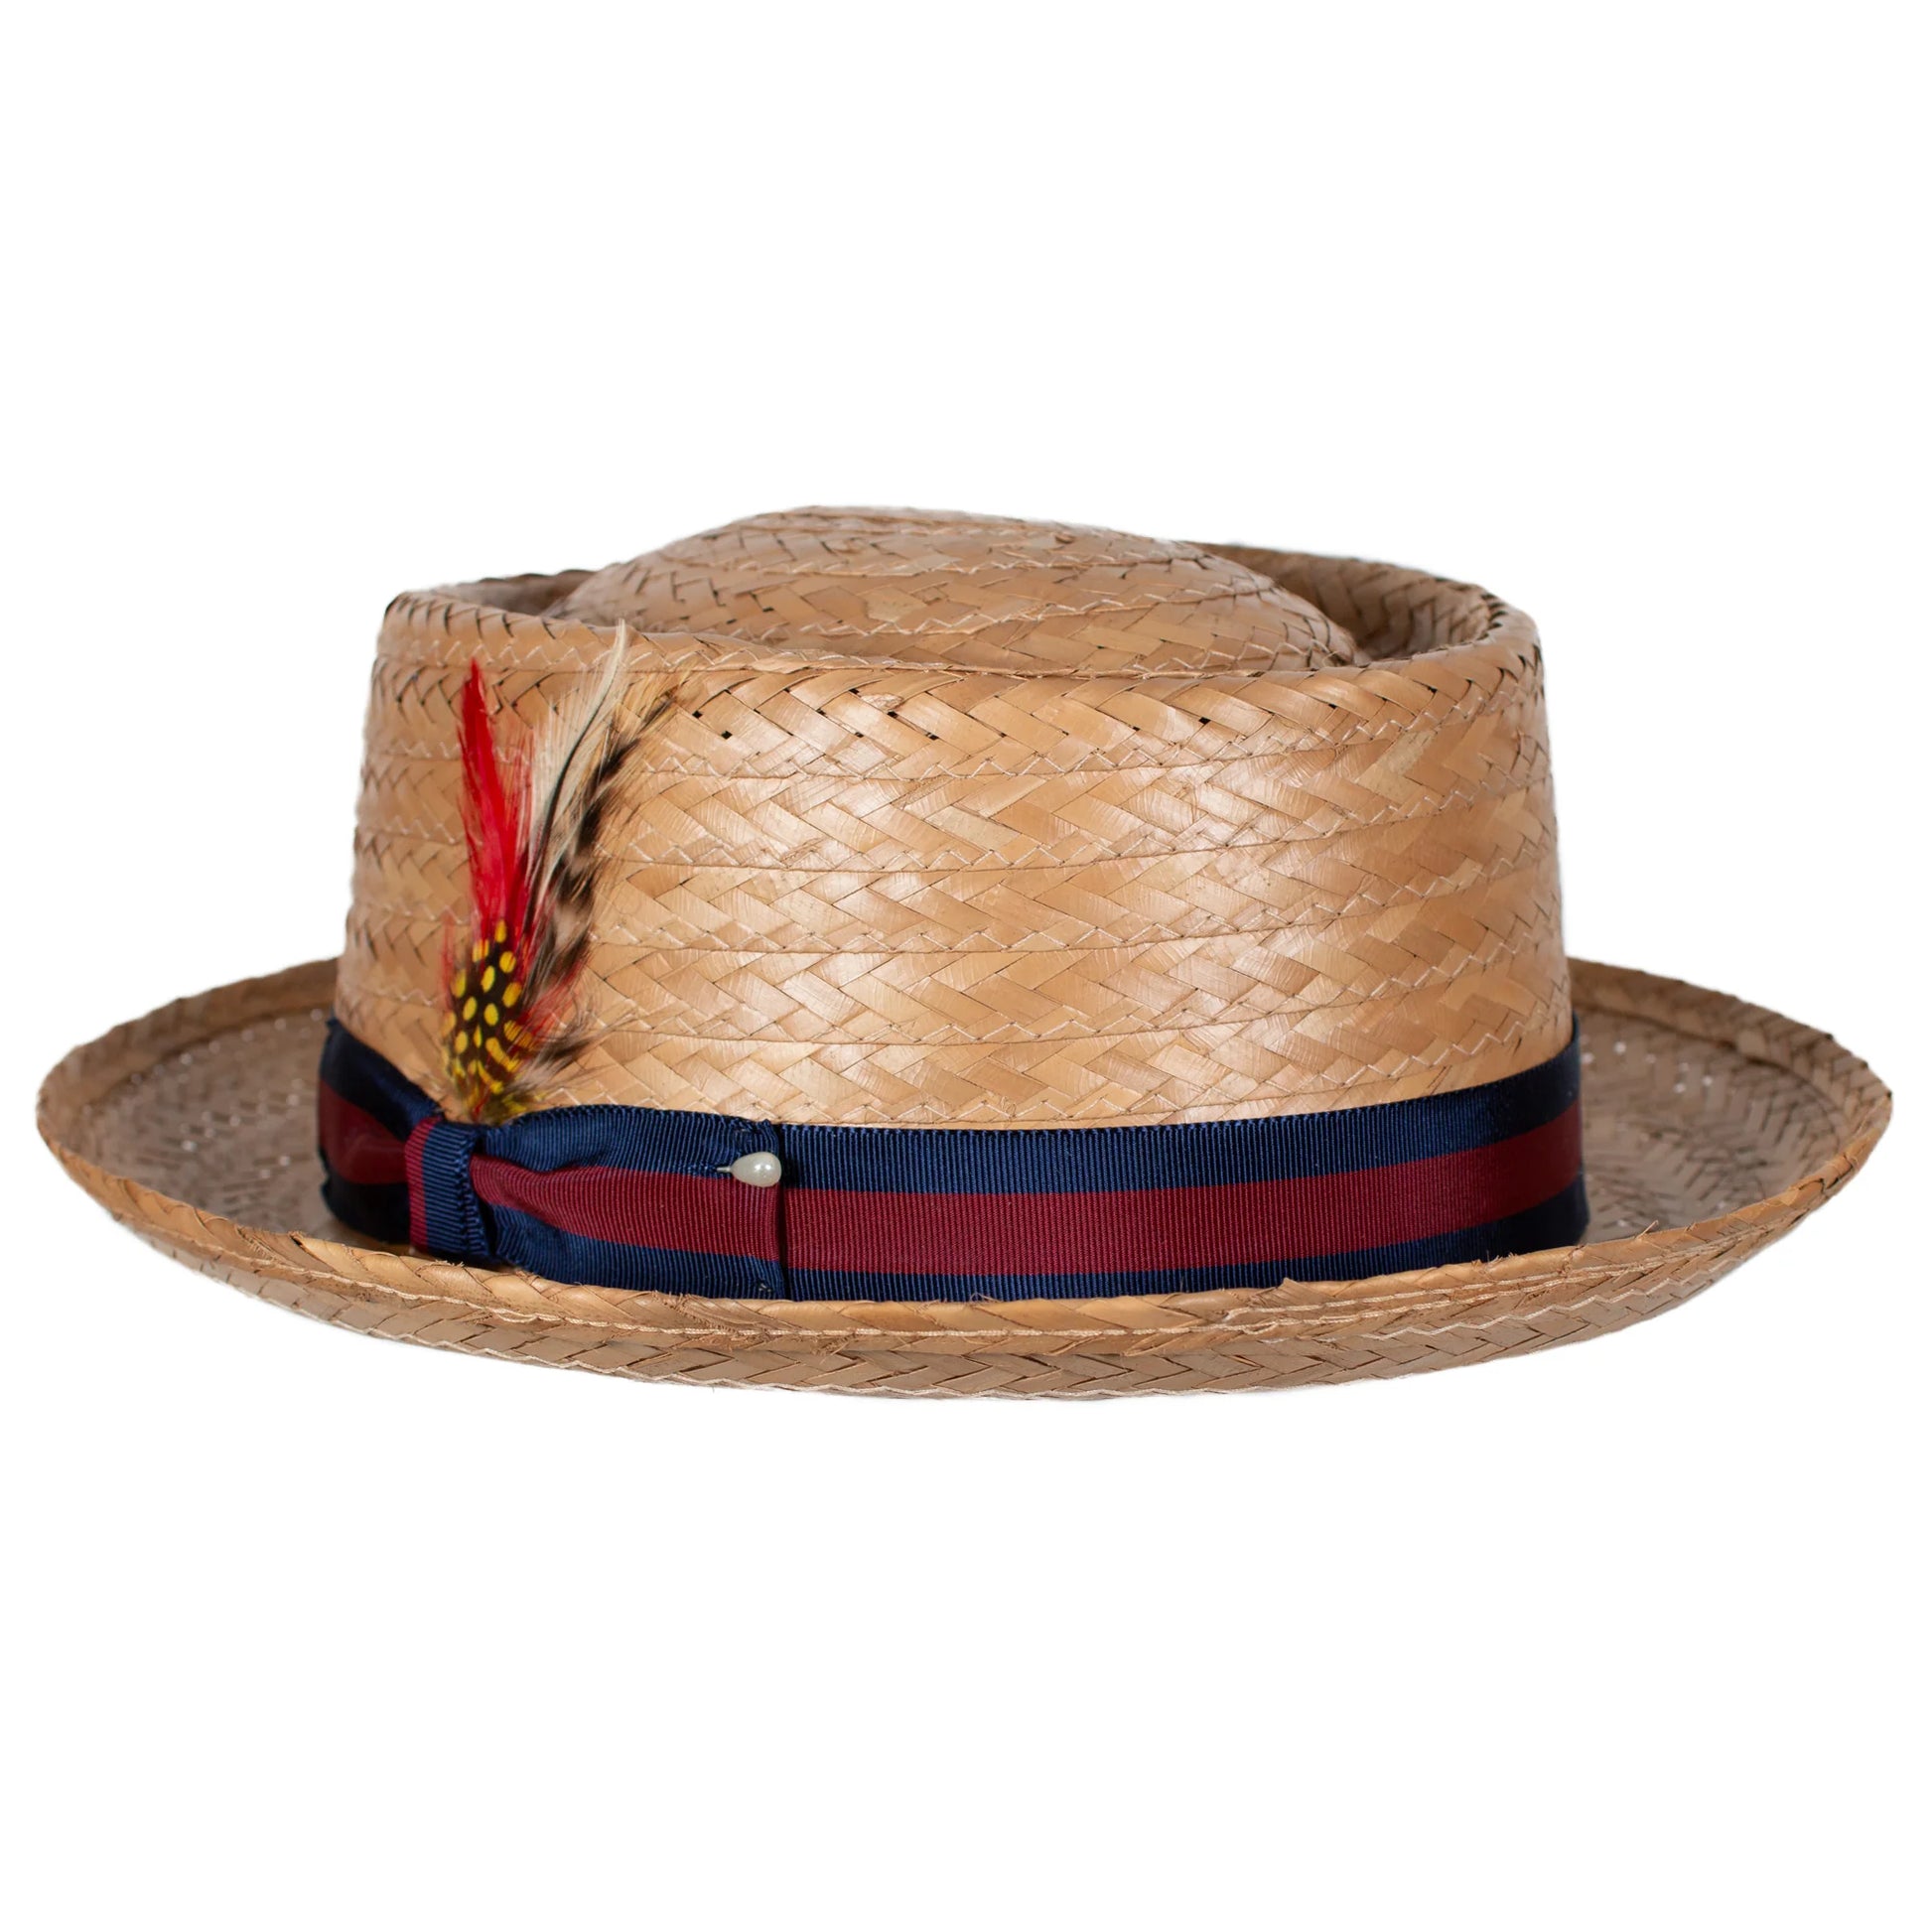 Coco Porkpie Coconut Straw Hat